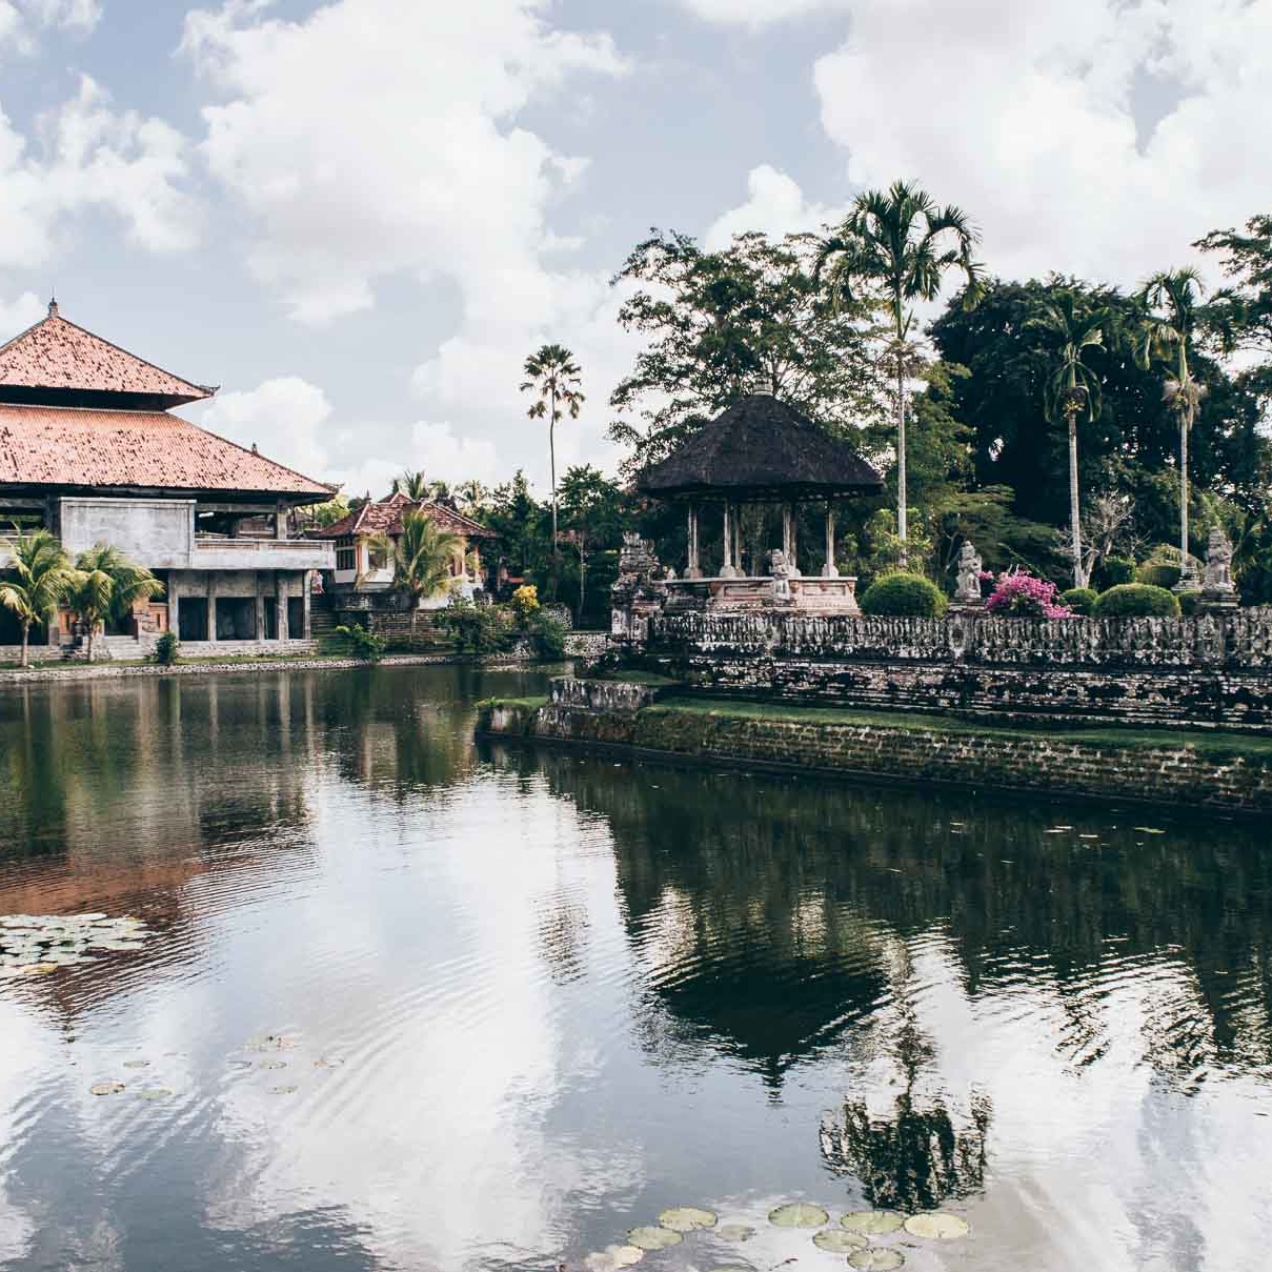 Montagnes et rizières dans le centre de Bali : De Kuta à Pemuteran